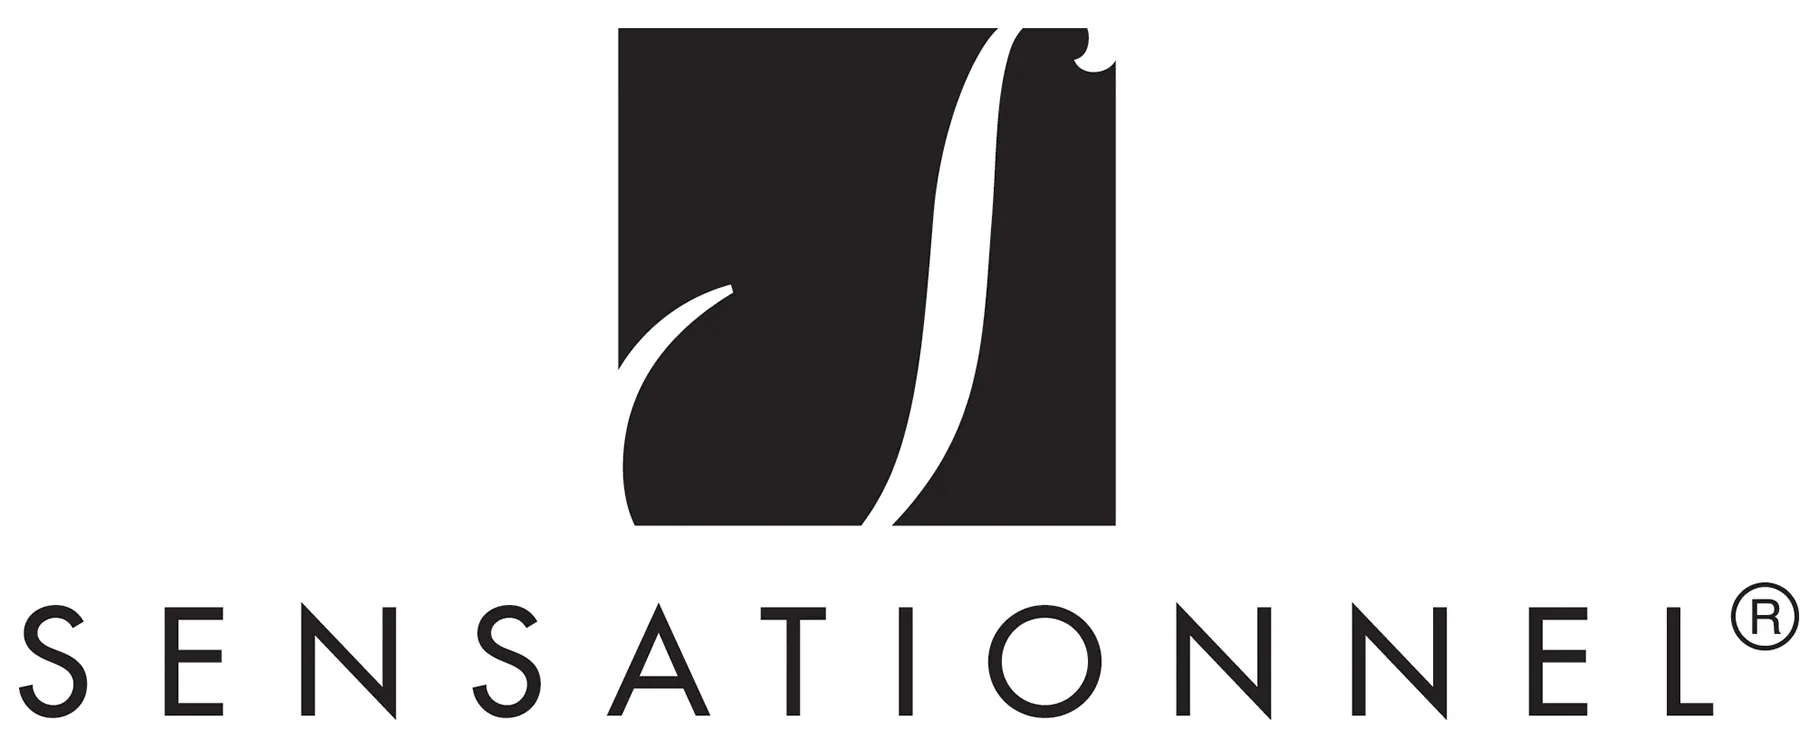 Logo for sensationnel